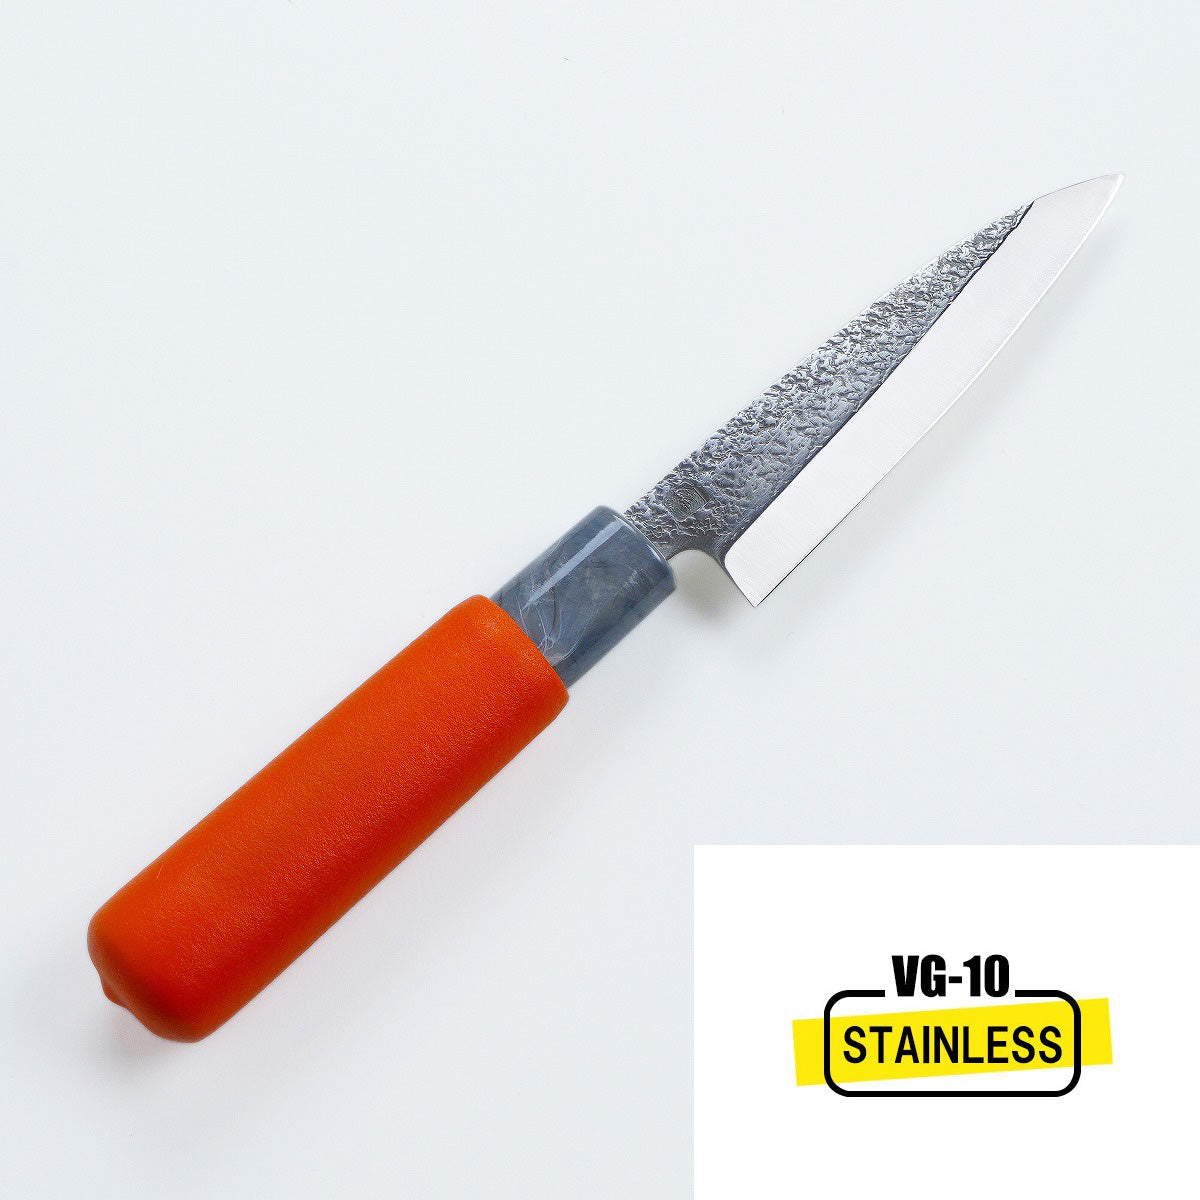 EN Petty (Utility Knife) VG-10, 120mm, For Left-Hander – Honmamon-Japan